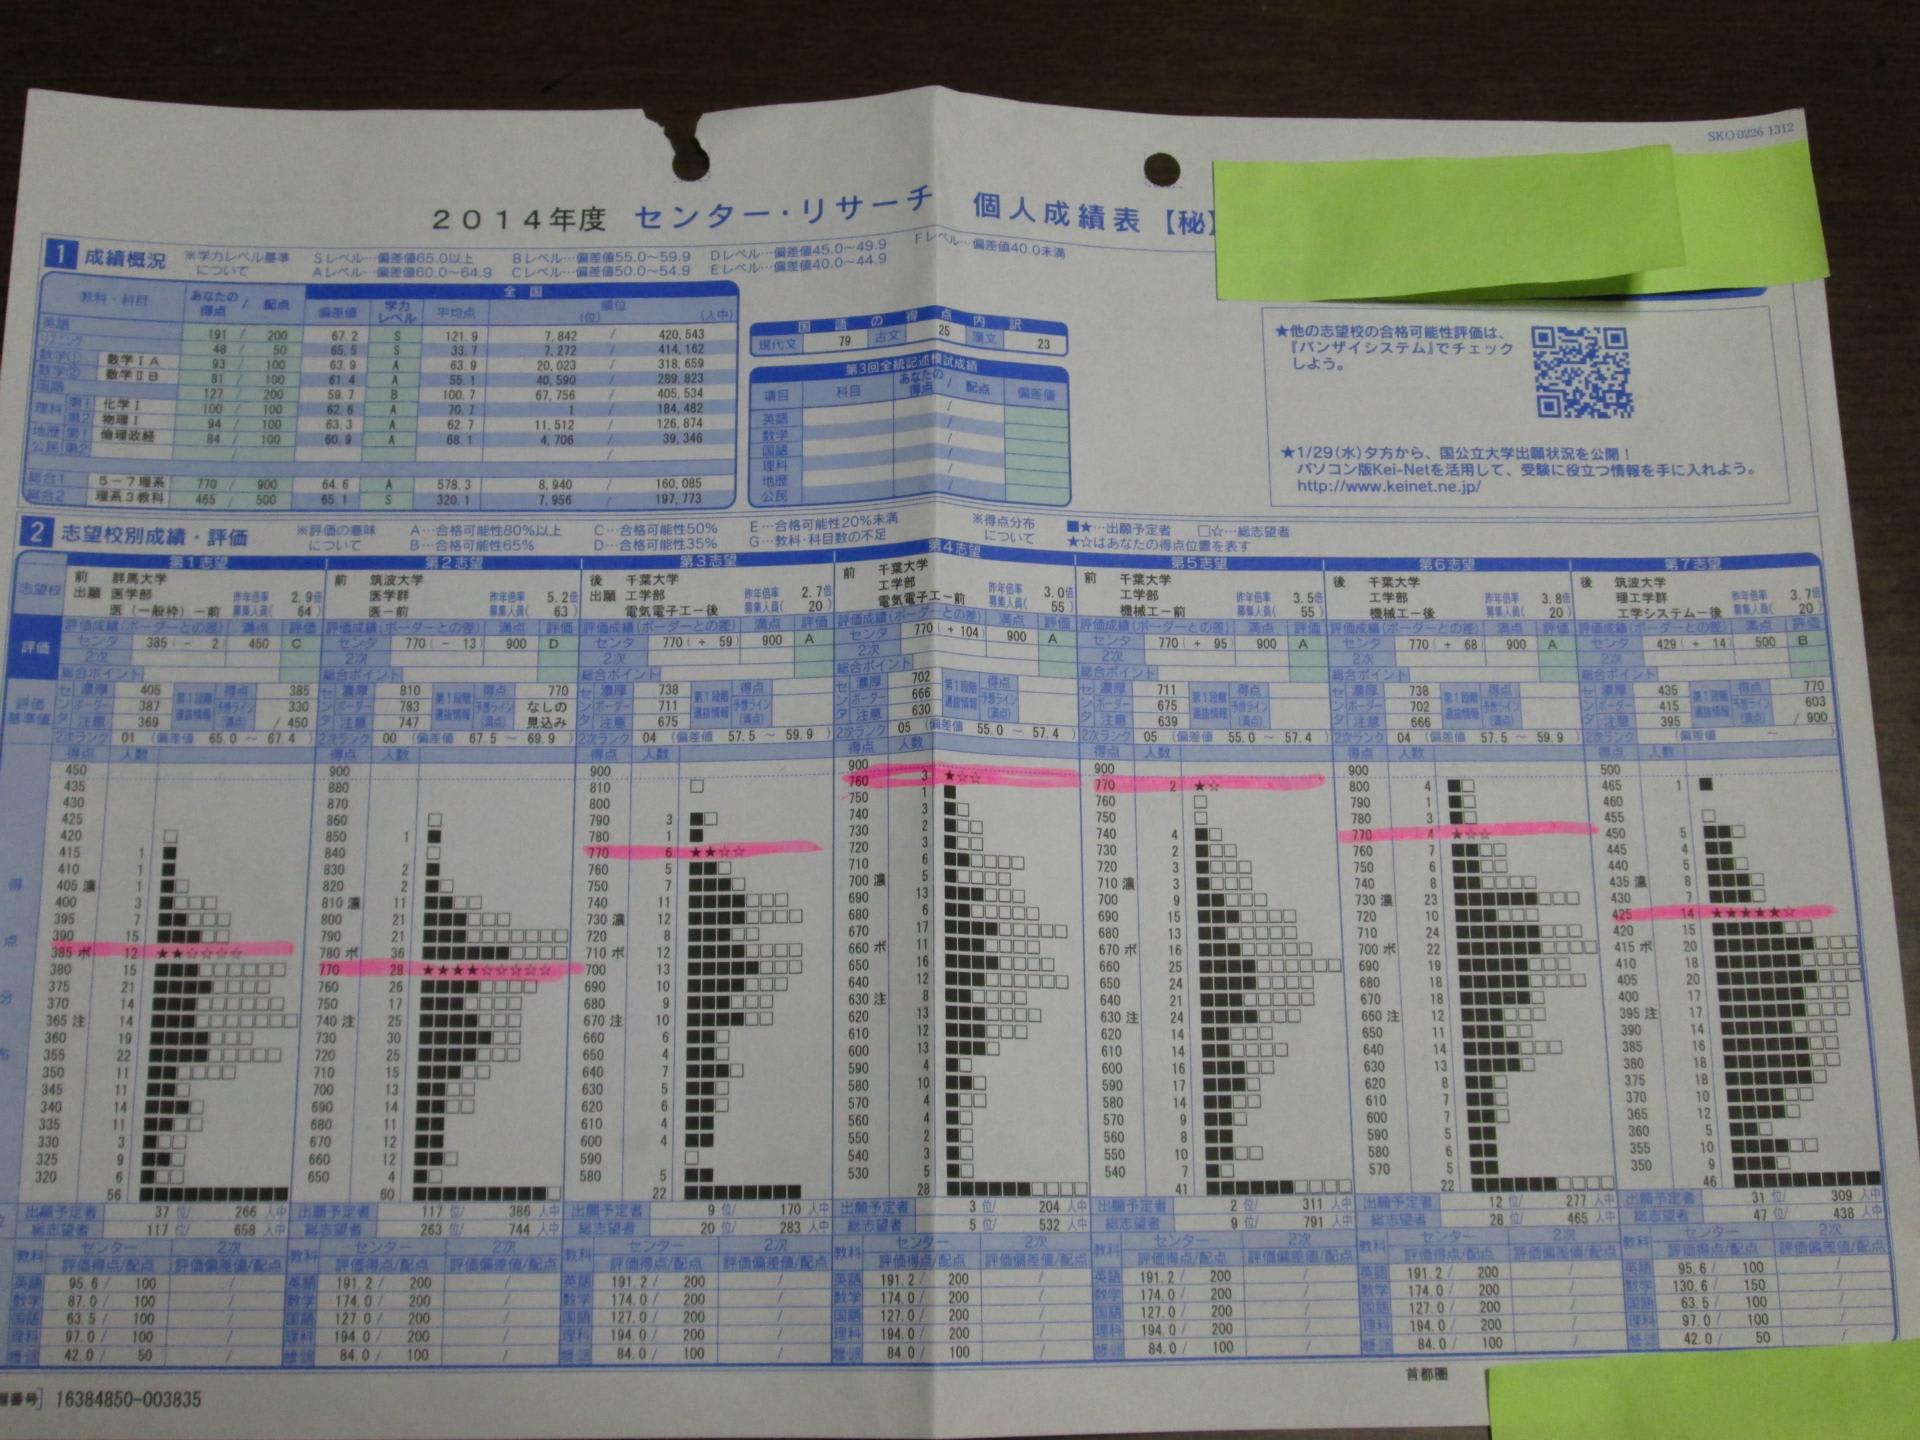 河合塾 センター リサーチ 大学入試センター試験 分析データ集 1995年 